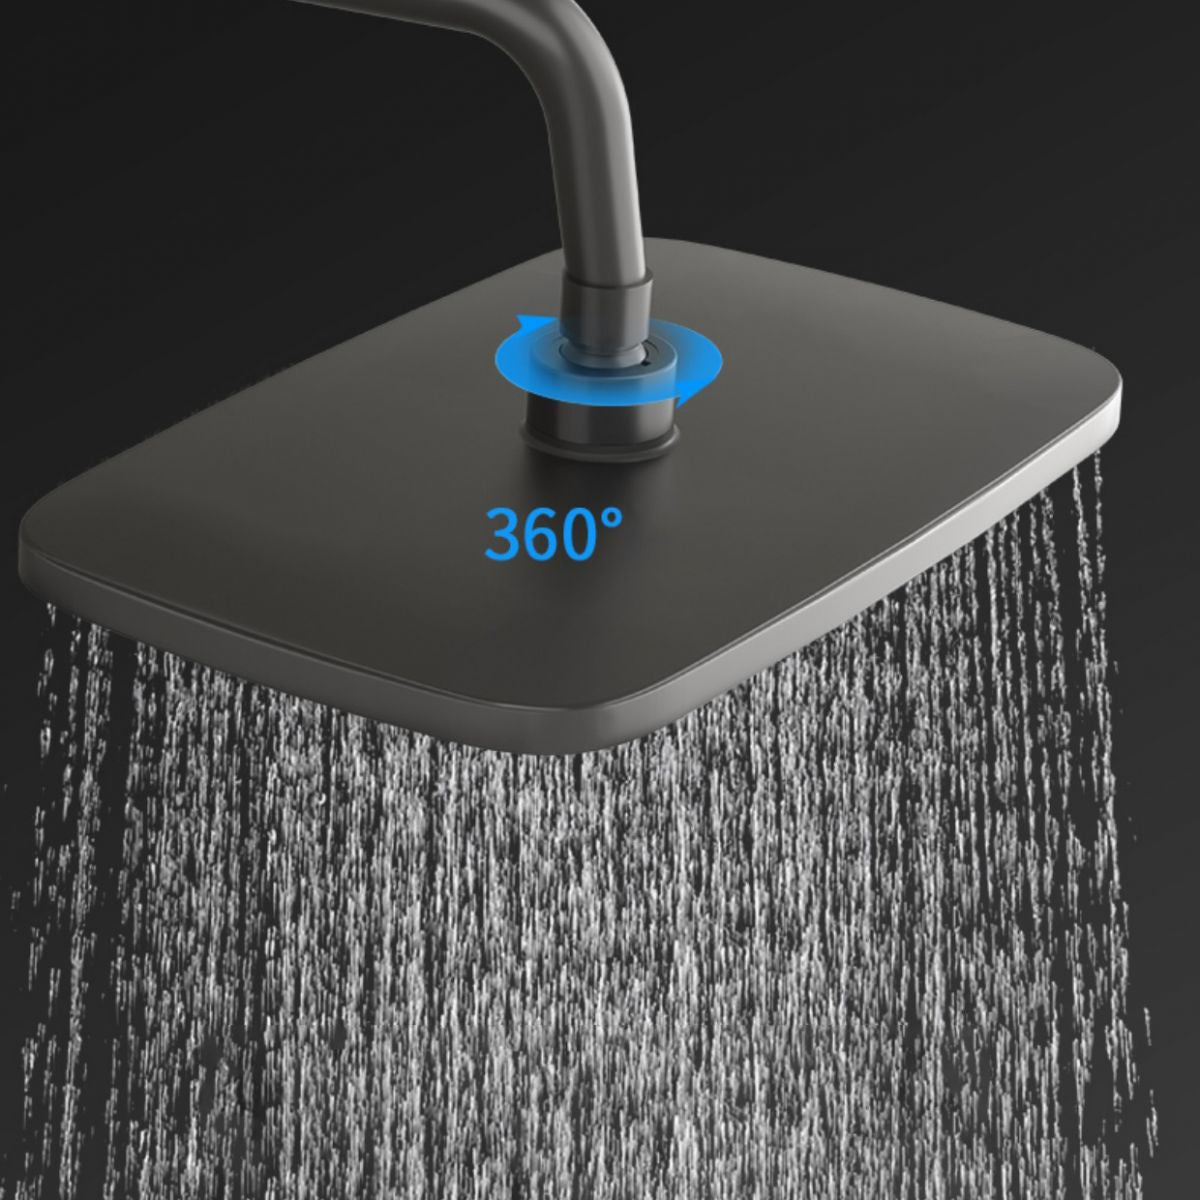 Modern Shower Combo Brass Handheld Shower Head Wall Mounted Shower Set